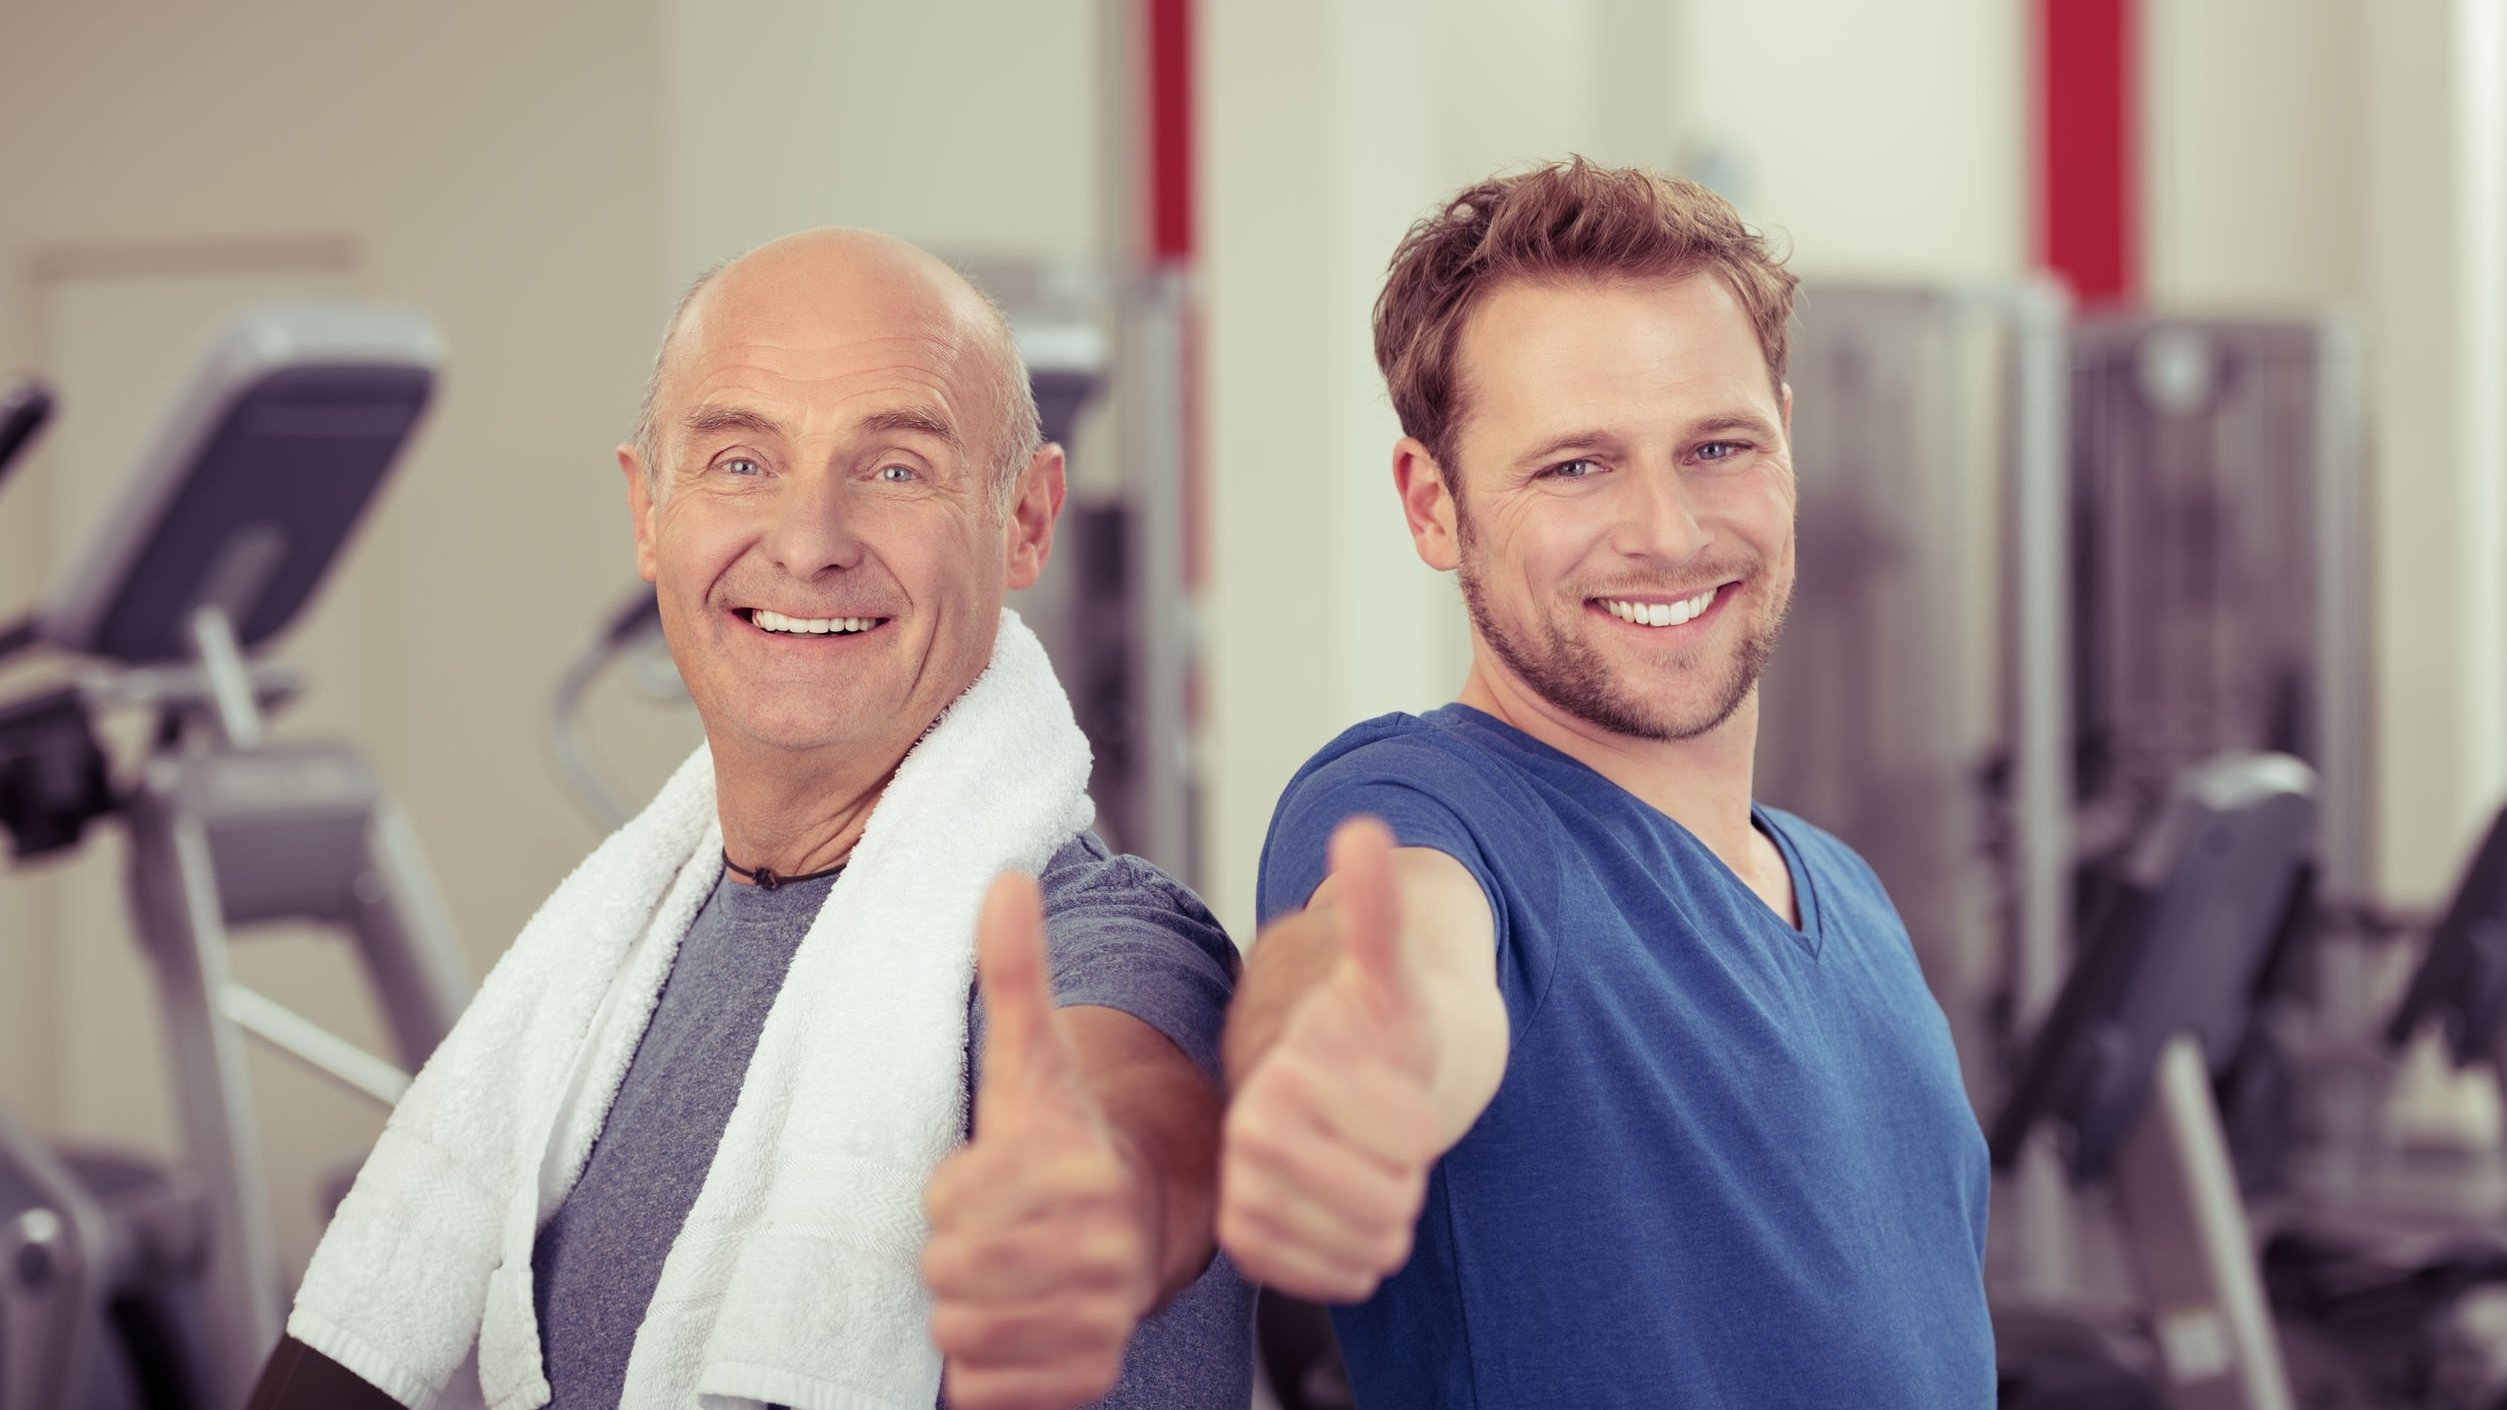 Dois homens, um jovem e um idoso, ambos sorrindo em academia